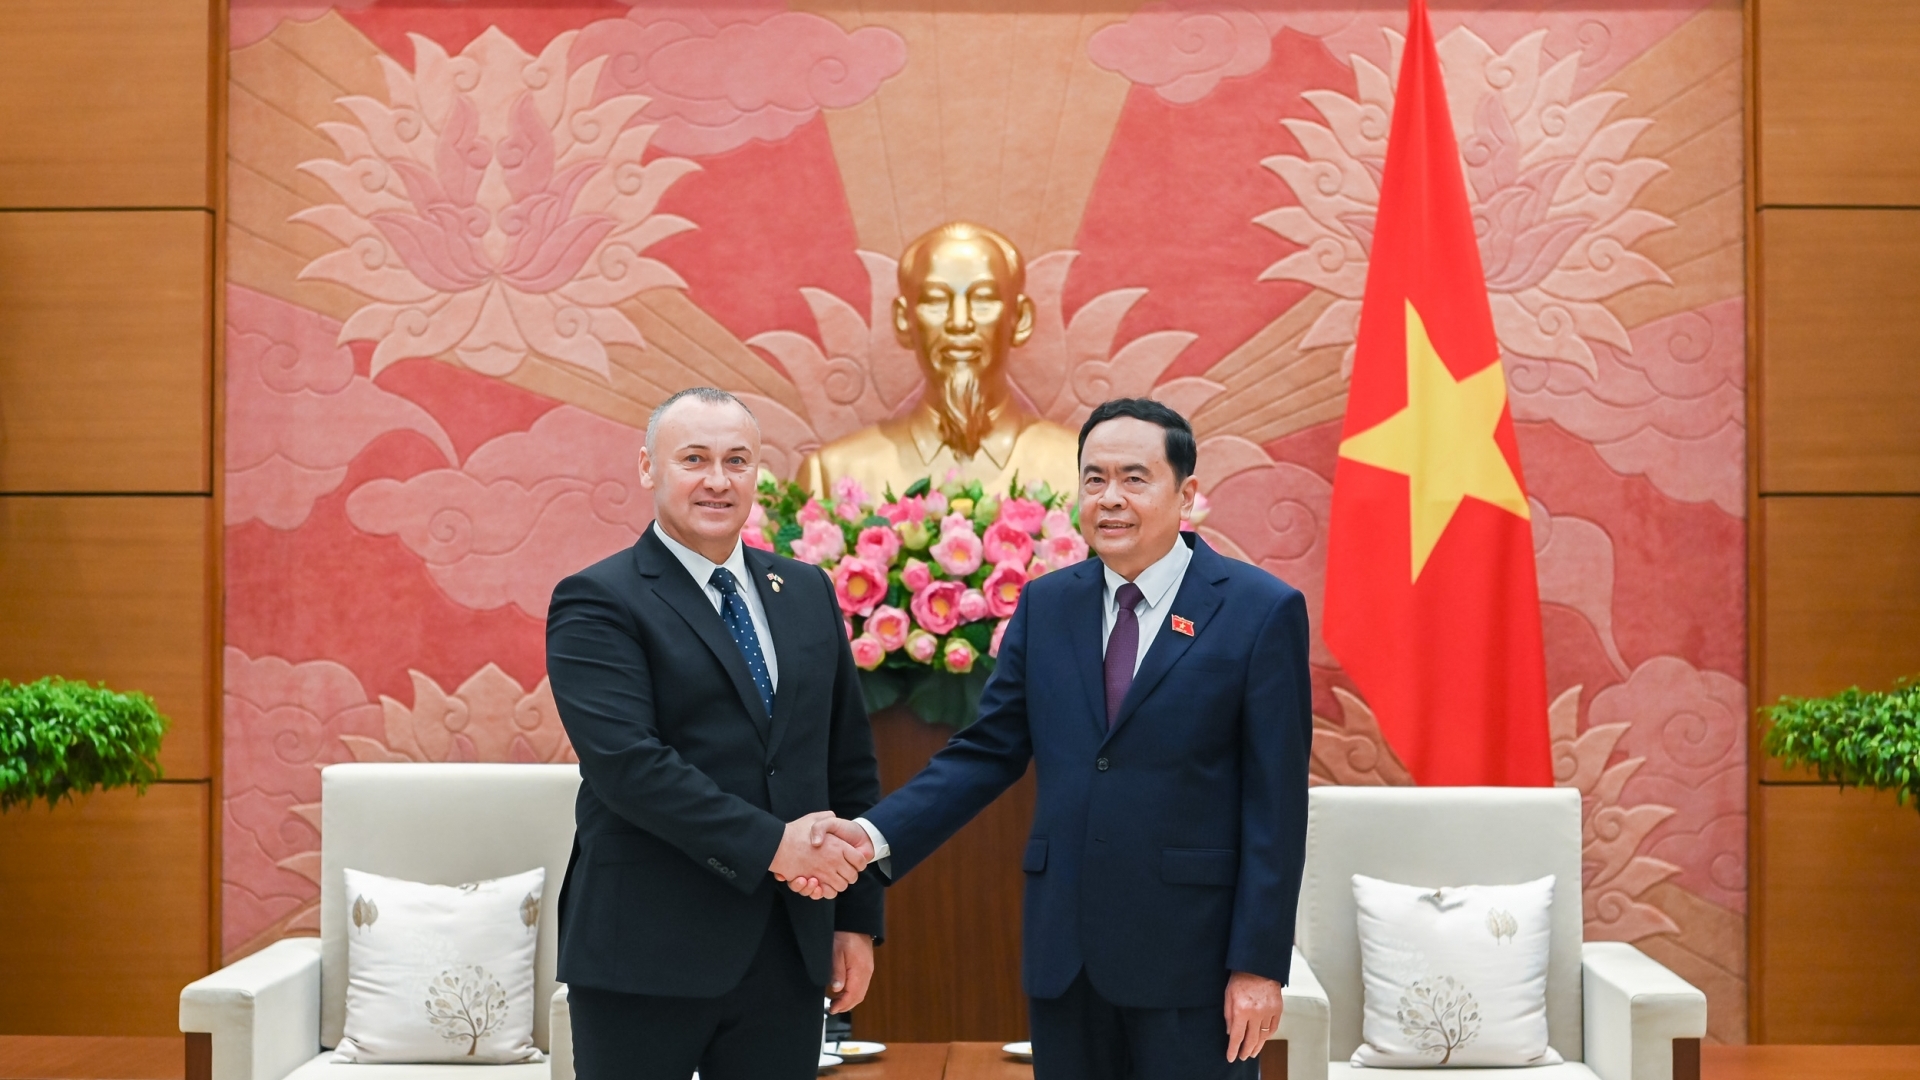 加强越南与罗马尼亚的友好合作关系